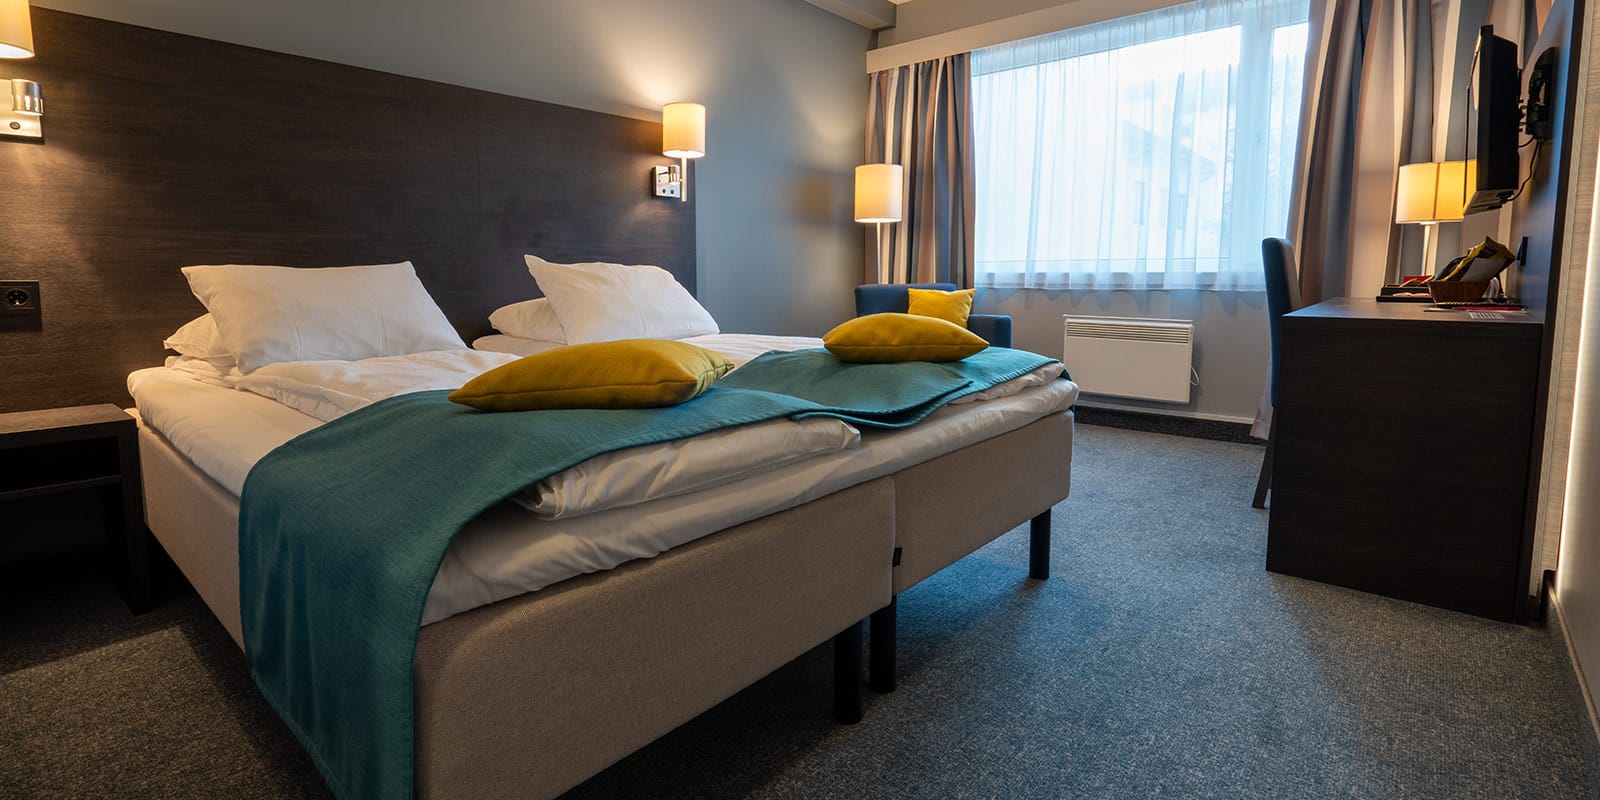 Säng i standarddubbelrum på Hotel Måløy